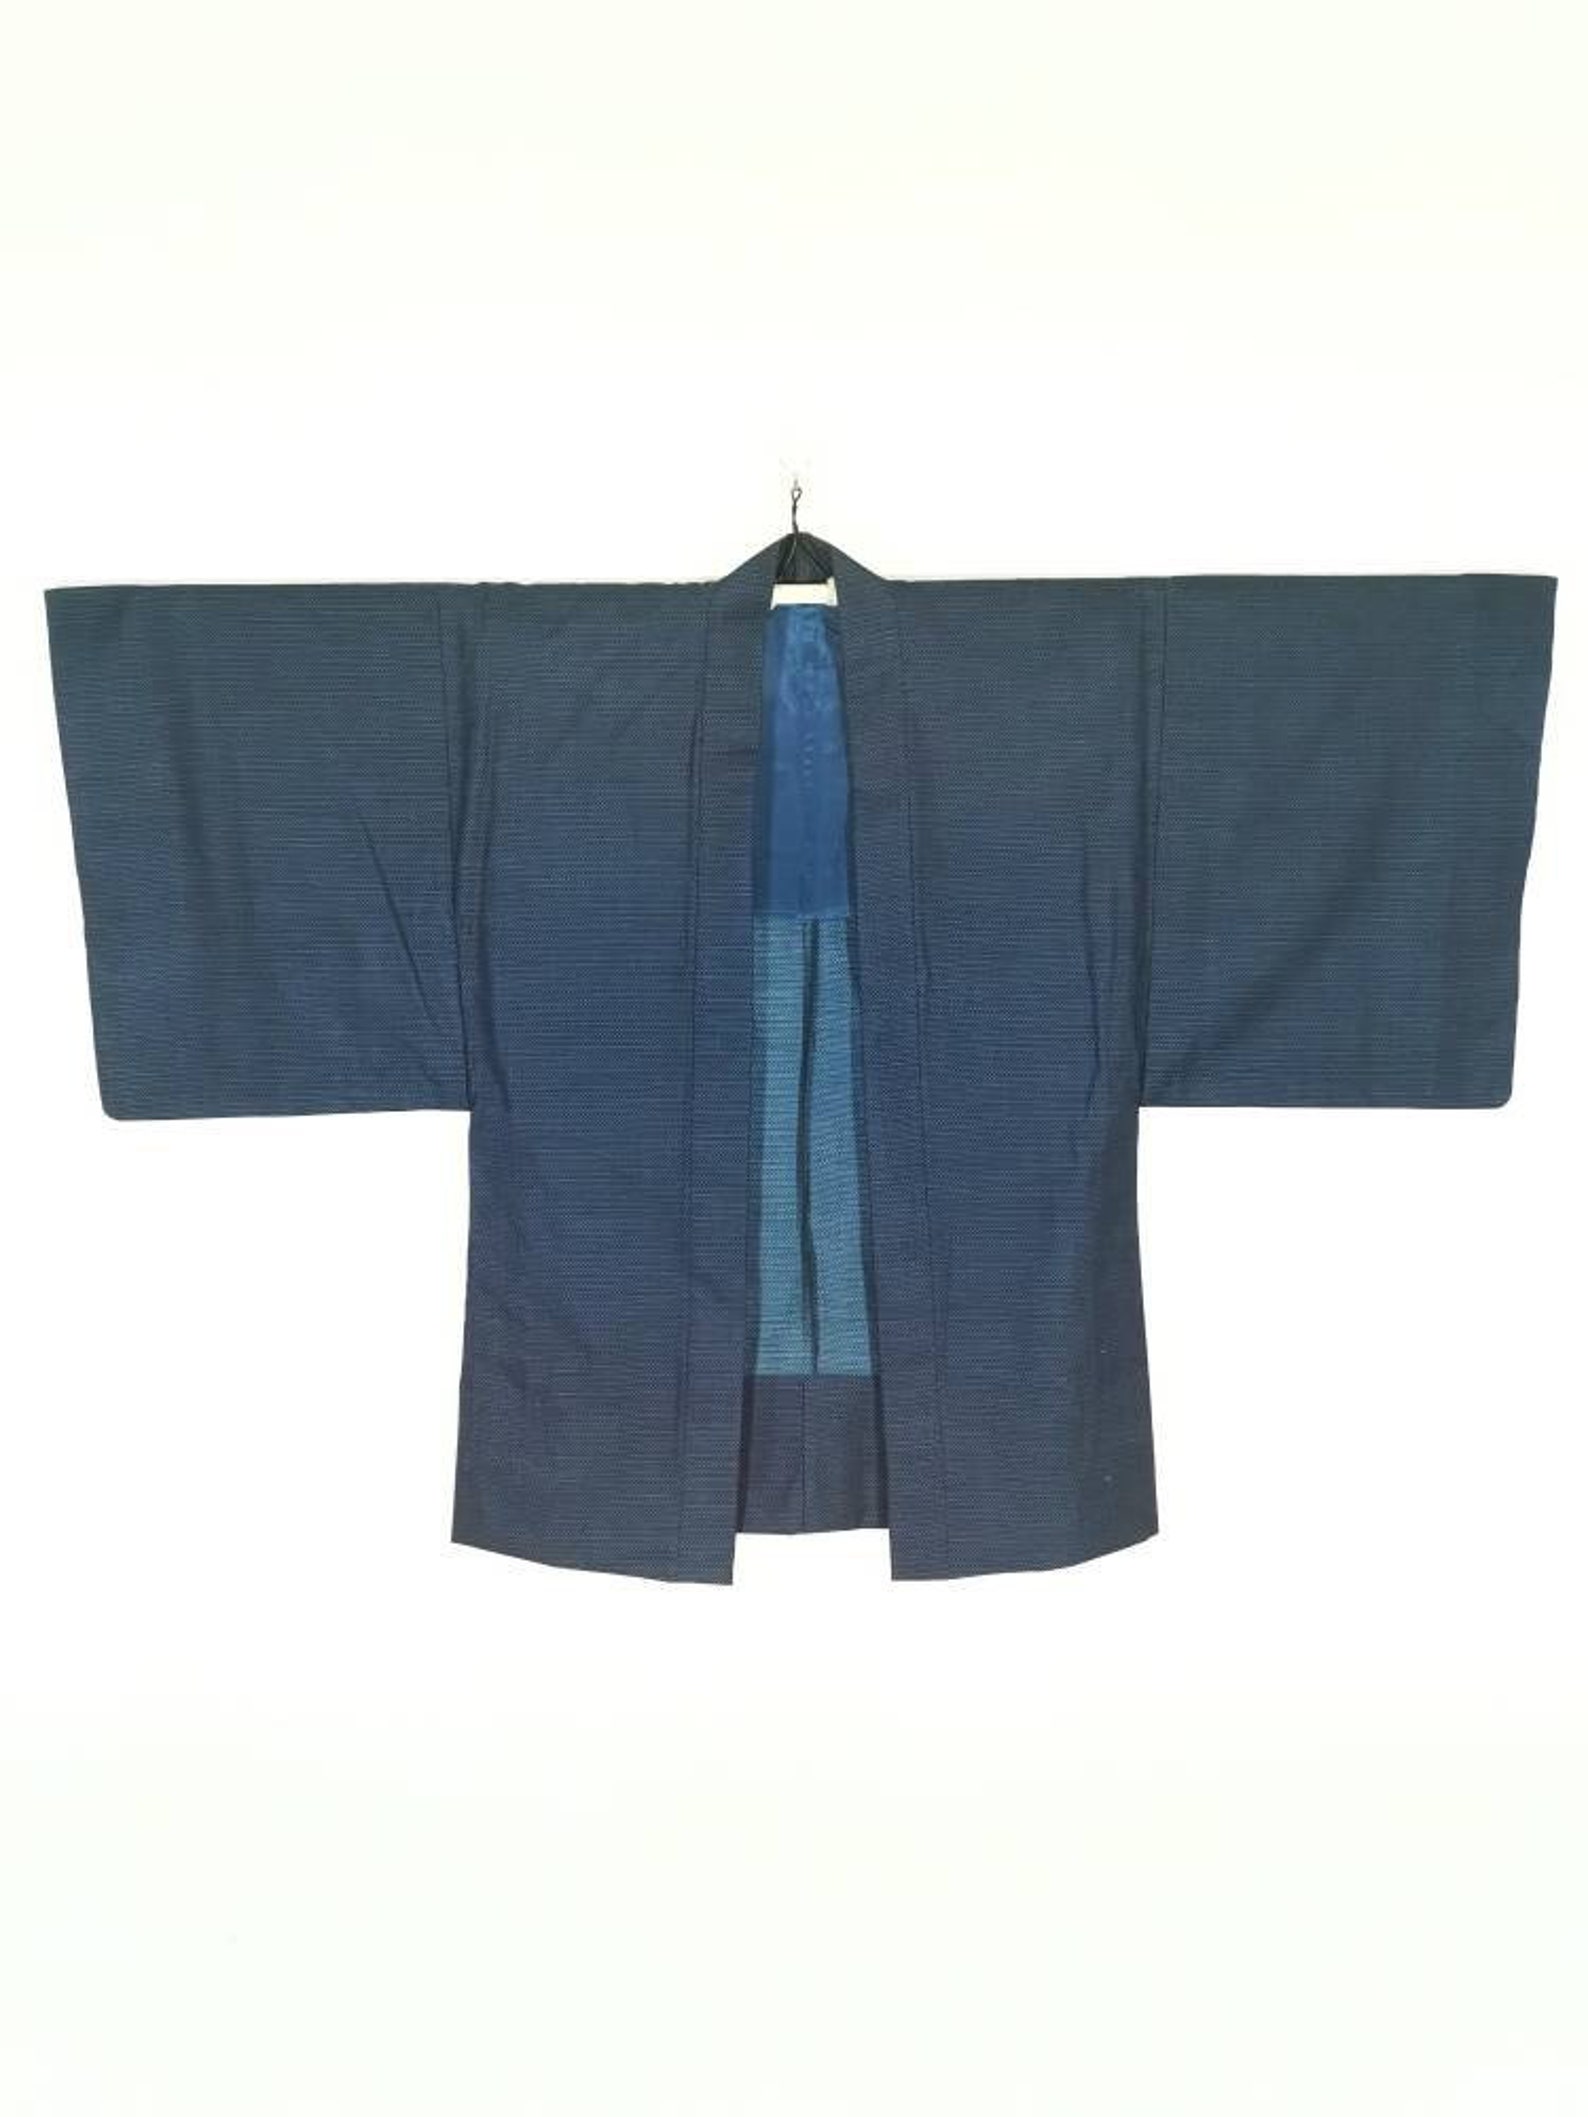 Japanese Blue Kimono Jacket Haori Floral Kimono Haori - Etsy